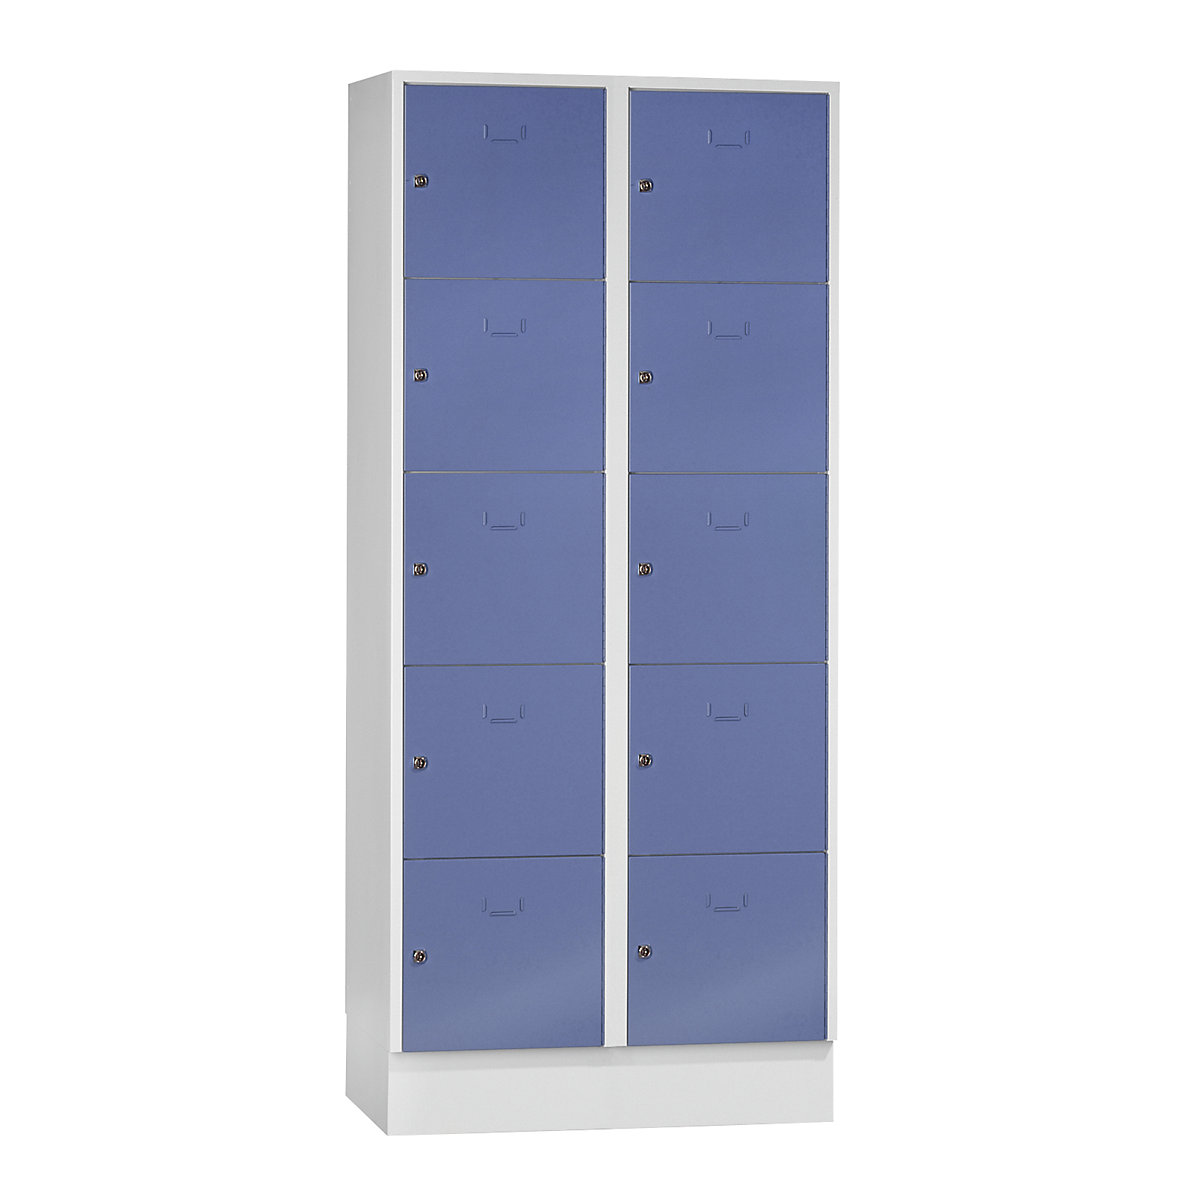 Vestiaire modulaire à casiers verrouillables – Wolf, 10 casiers, largeur 400 mm, bleu pigeon / gris clair